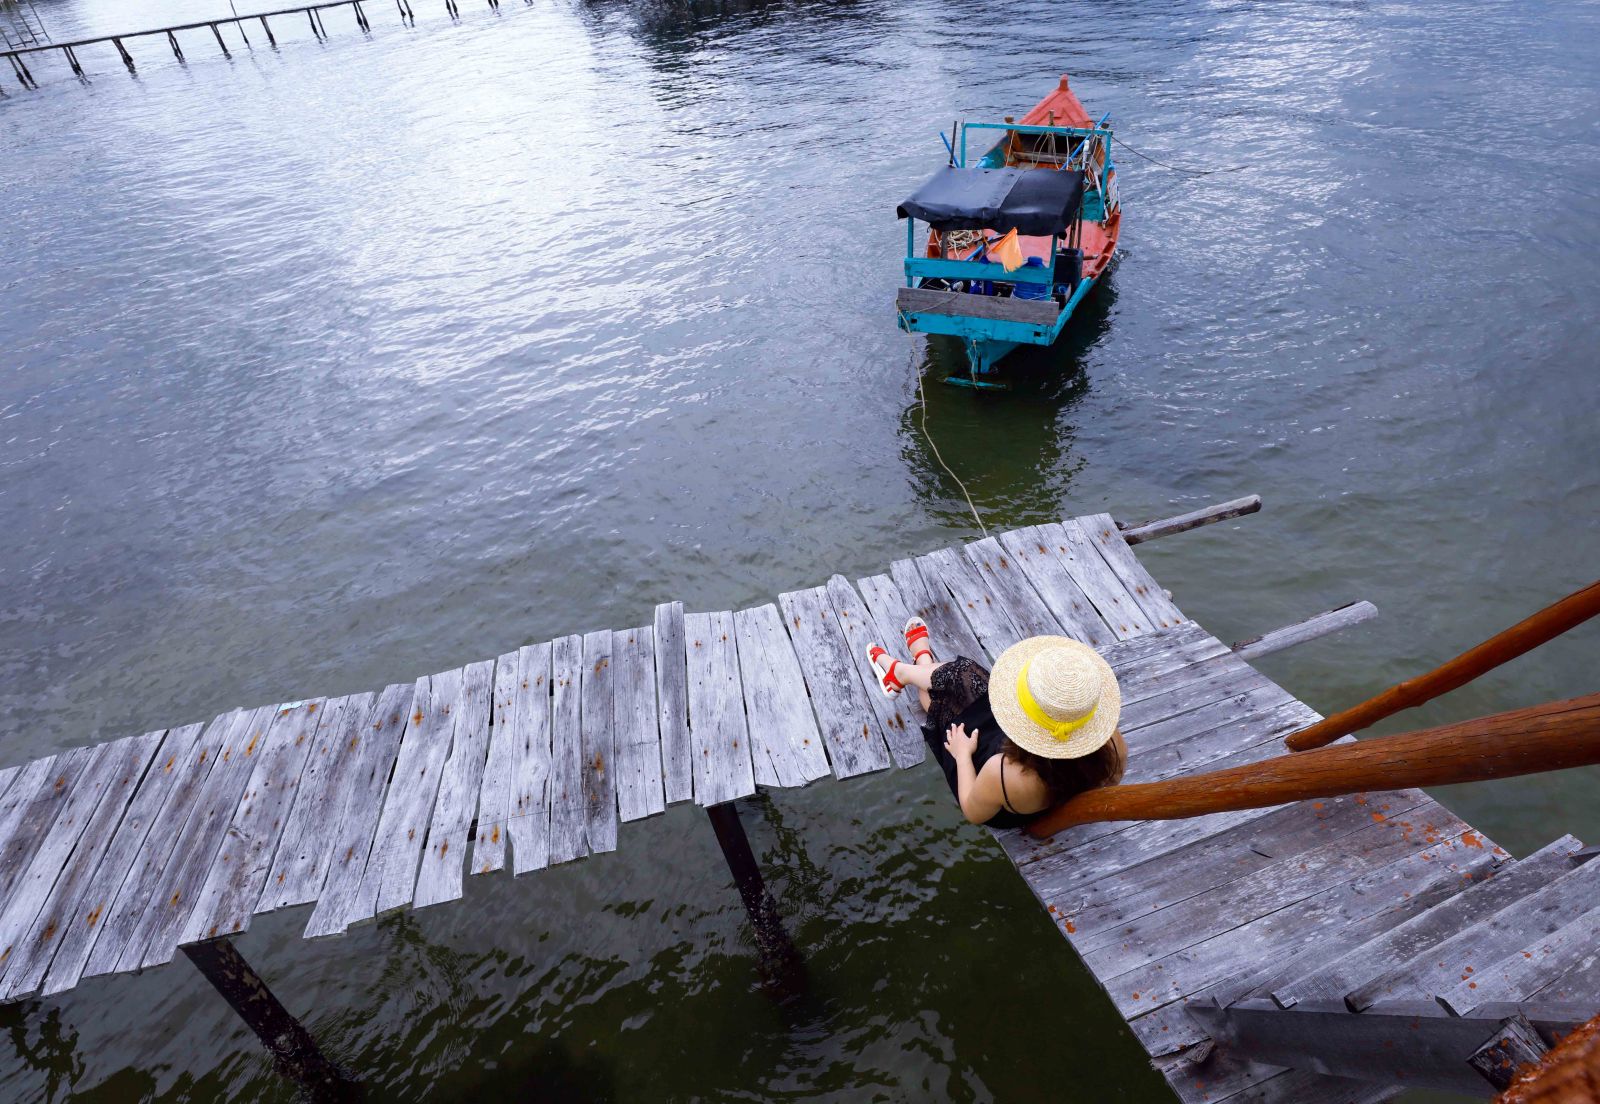 Rạch Vẹm còn là mê cung của những cây cầu gỗ xuyên biển với nhiều góc chụp đẹp dành cho du khách.